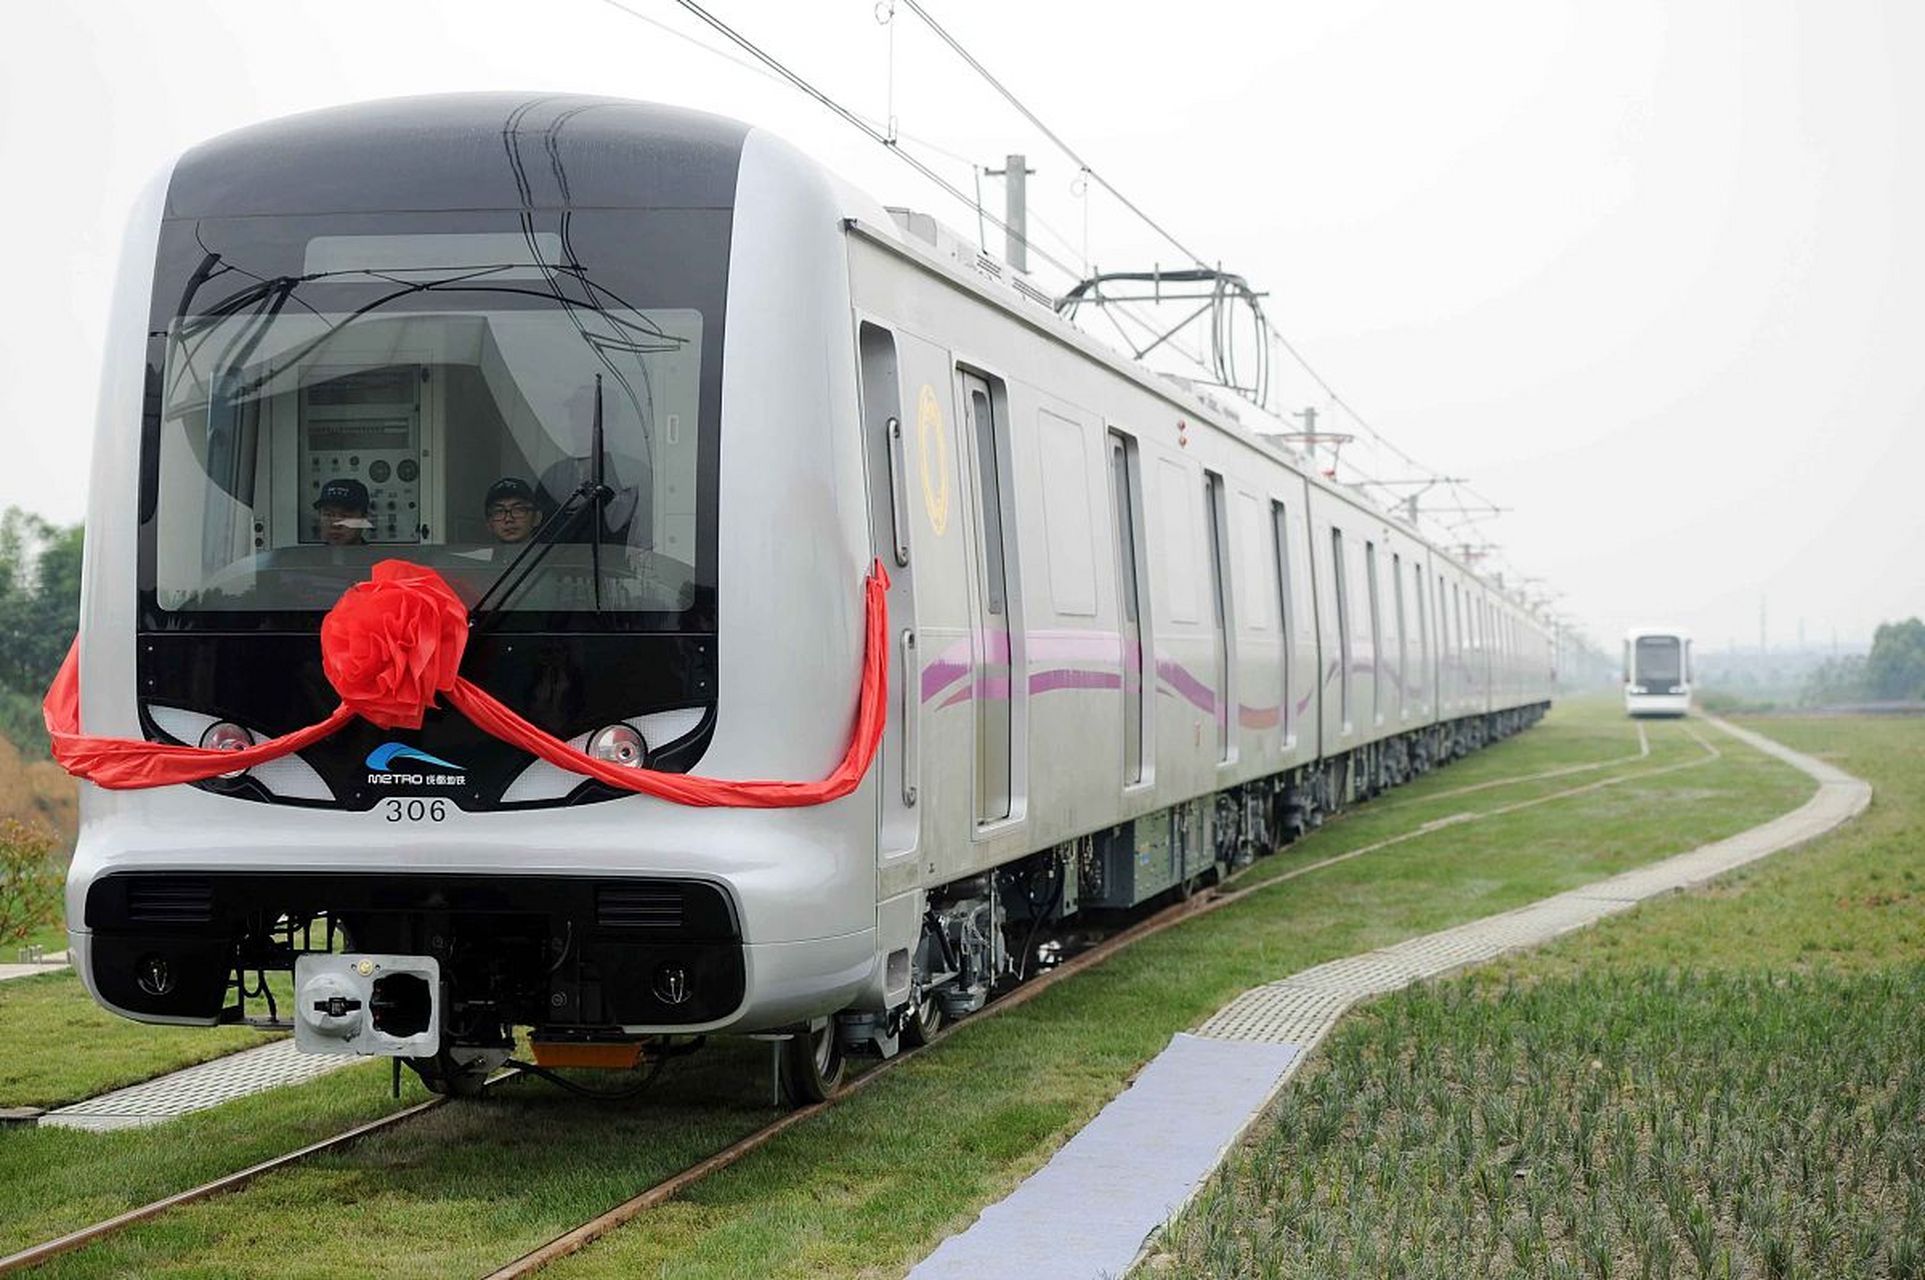 好消息,上海地铁26号线要来了,可与21条轨交线路换乘,全长约78公里,设